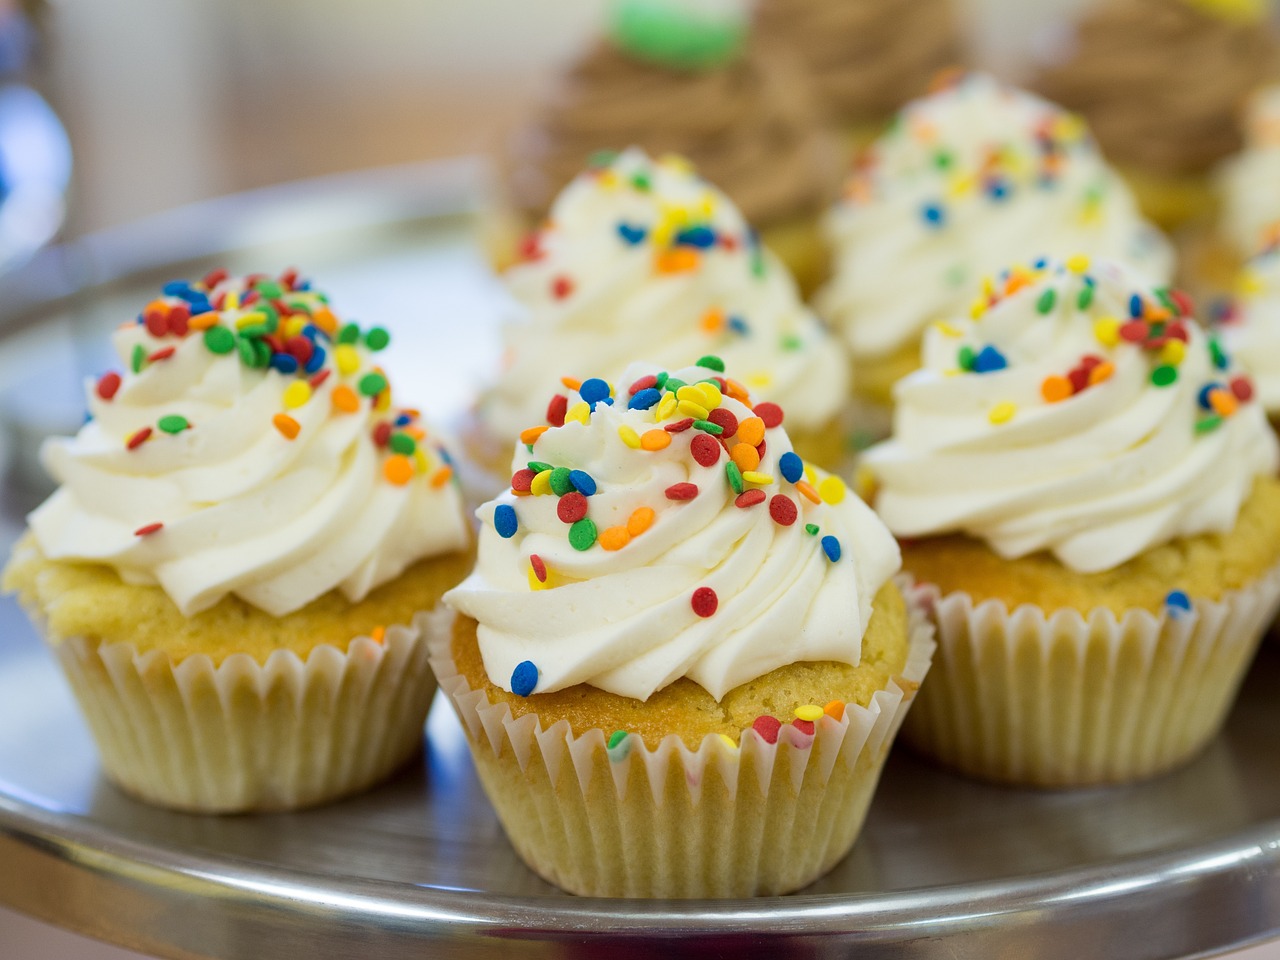 Cupcakes cu vanilie si confetti - Reteta perfecta pe gustul copiilor